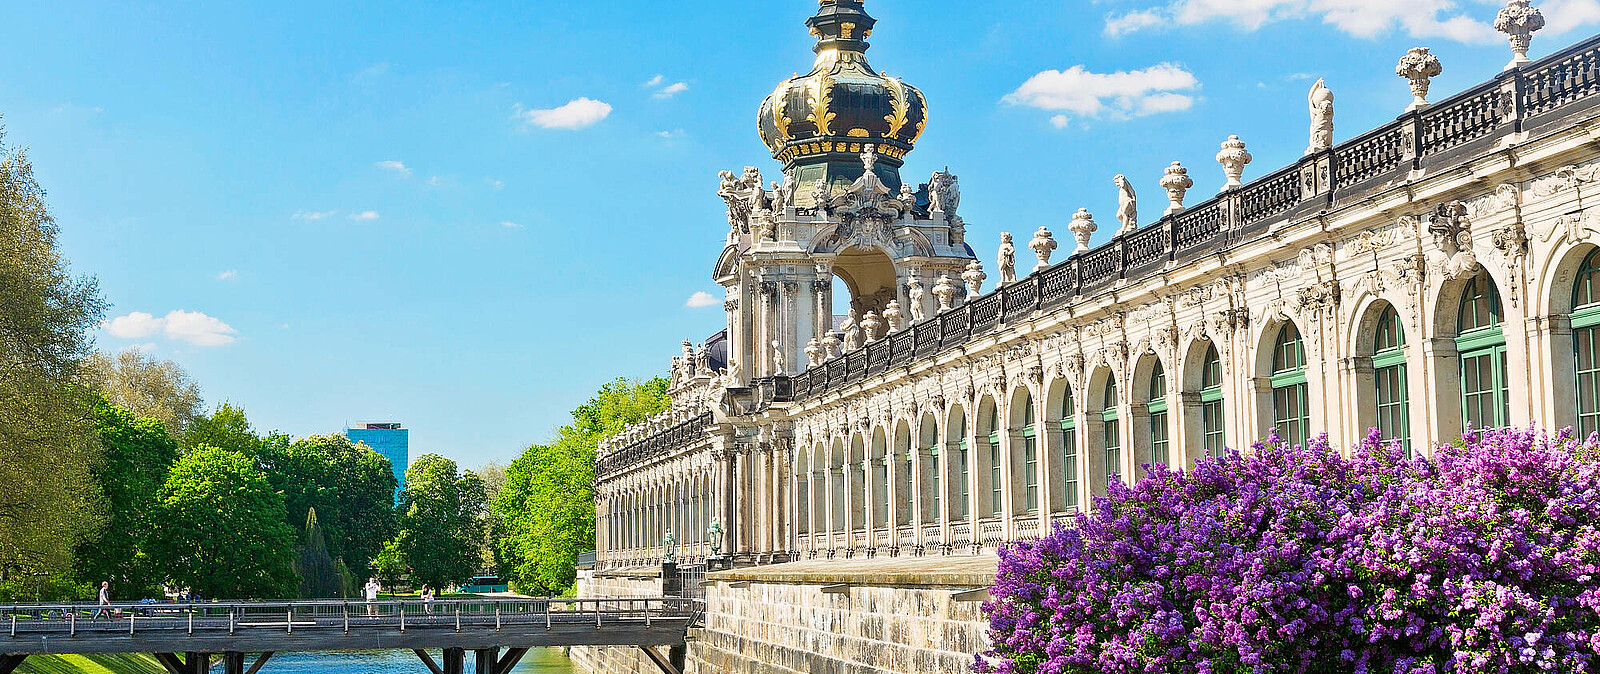 Der Dresdner Zwinger mitten in der sächsischen Landeshauptstadt ist eines der bekanntesten Barockbauwerke Deutschlands und neben der Frauenkirche wohl das berühmteste Baudenkmal der Stadt Dresden.